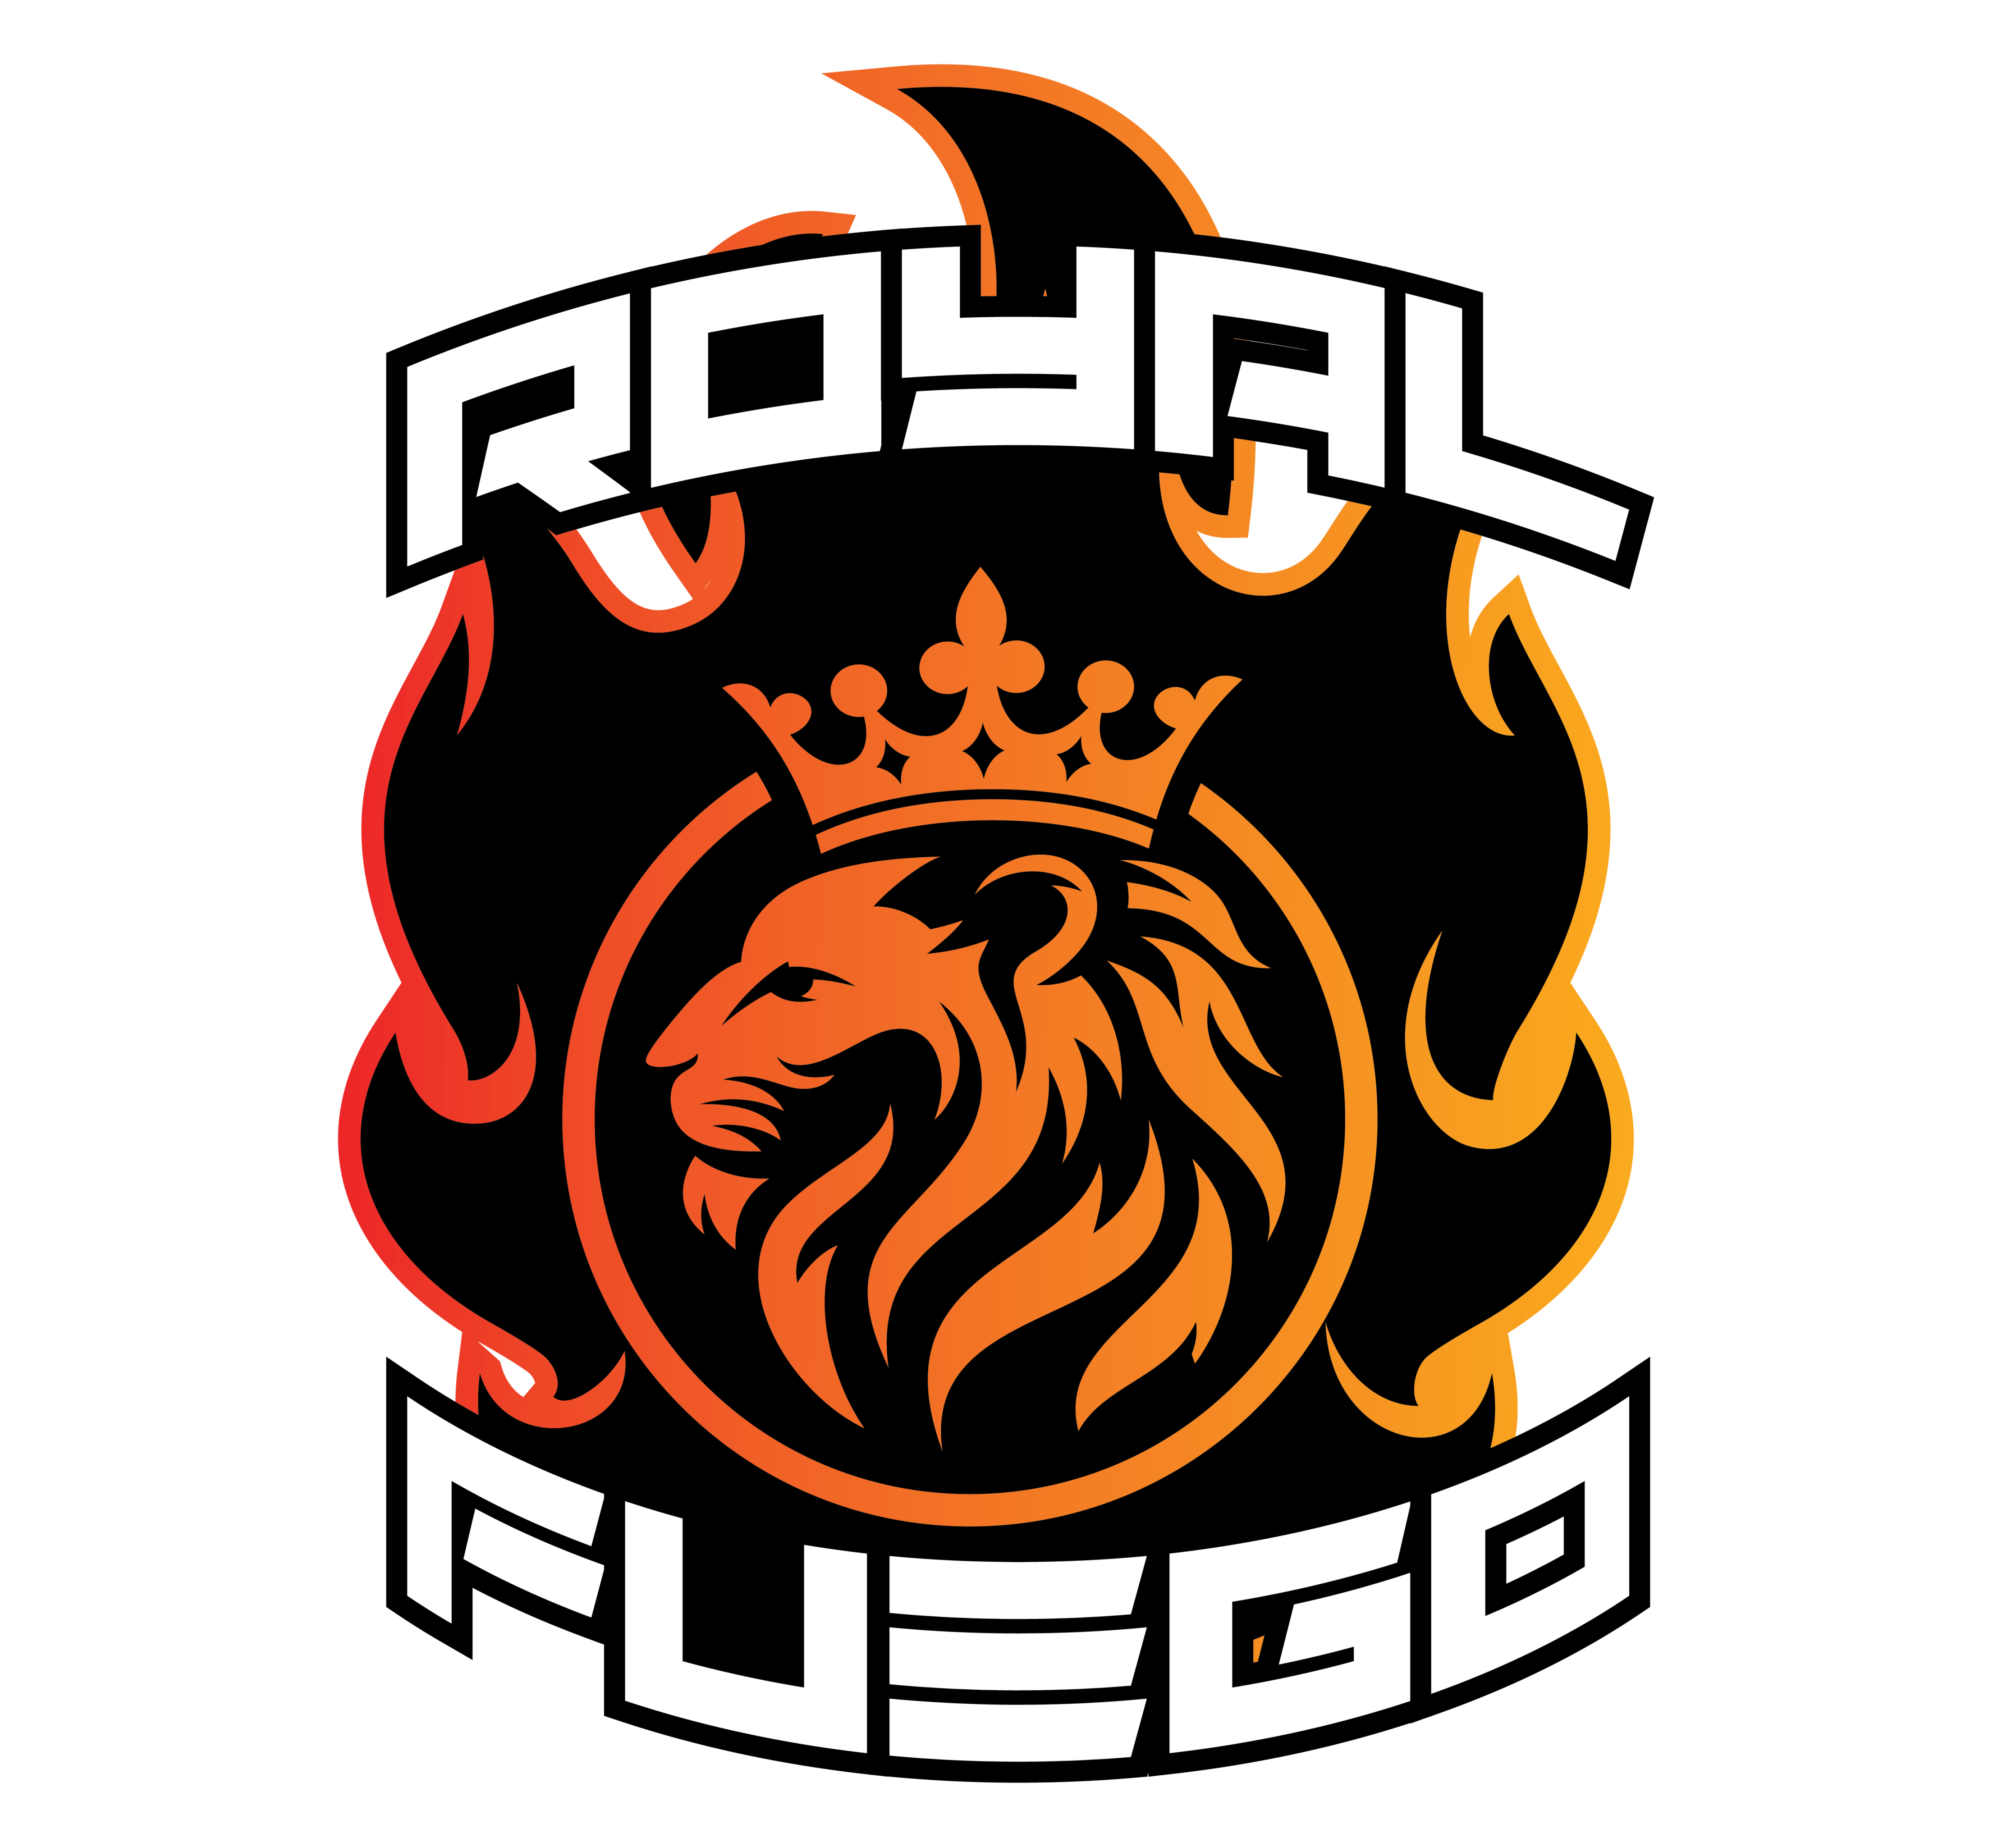 RoyalFuego